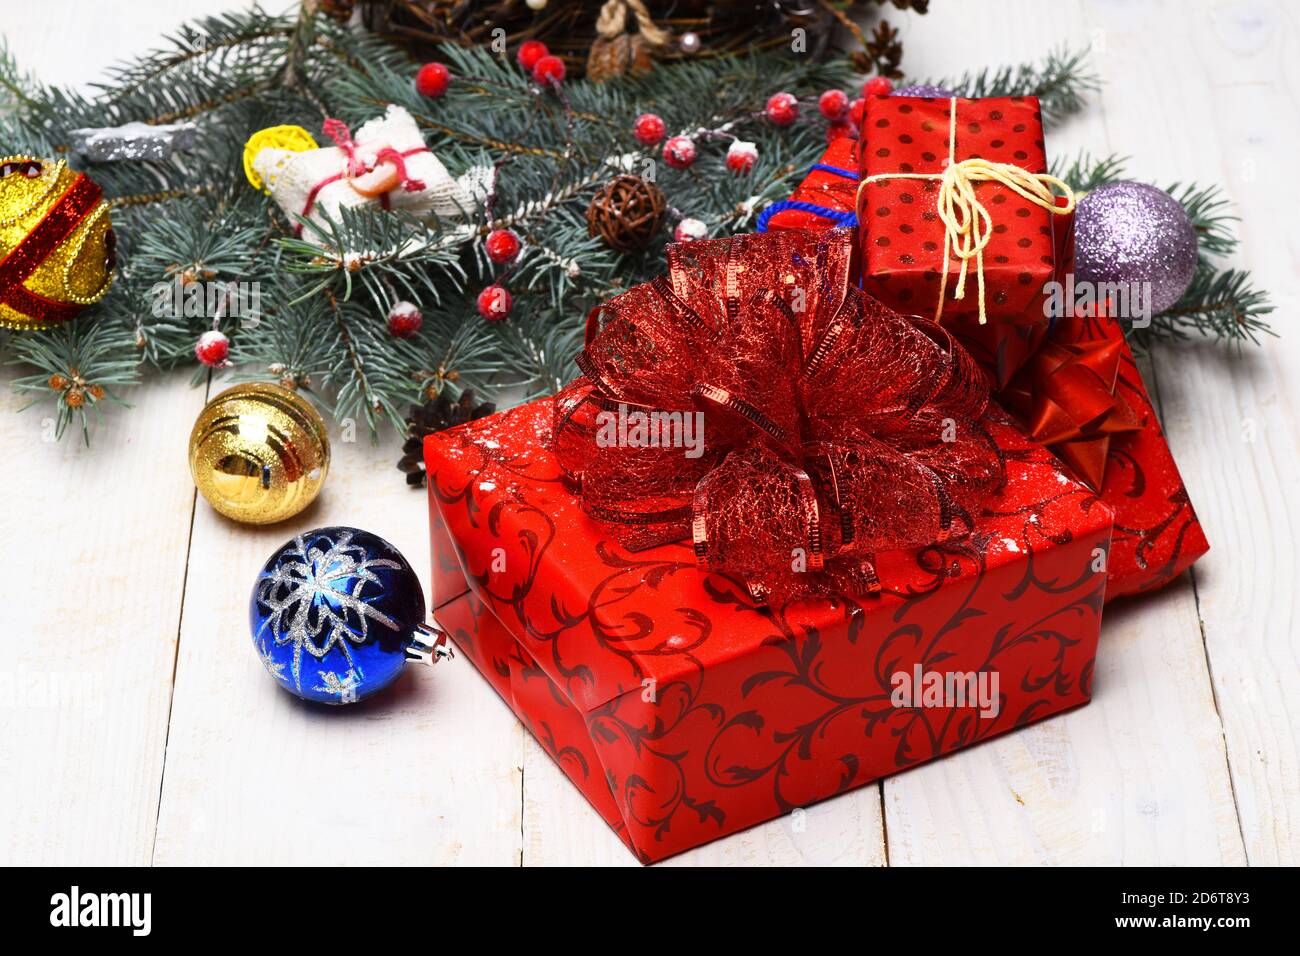 Adornos navideños sobre fondo blanco de textura de madera. Concepto de  tarjeta de invierno y año Nuevo. Composición de la decoración del árbol de  Navidad. Cajas con arcos rojos cerca de ramas